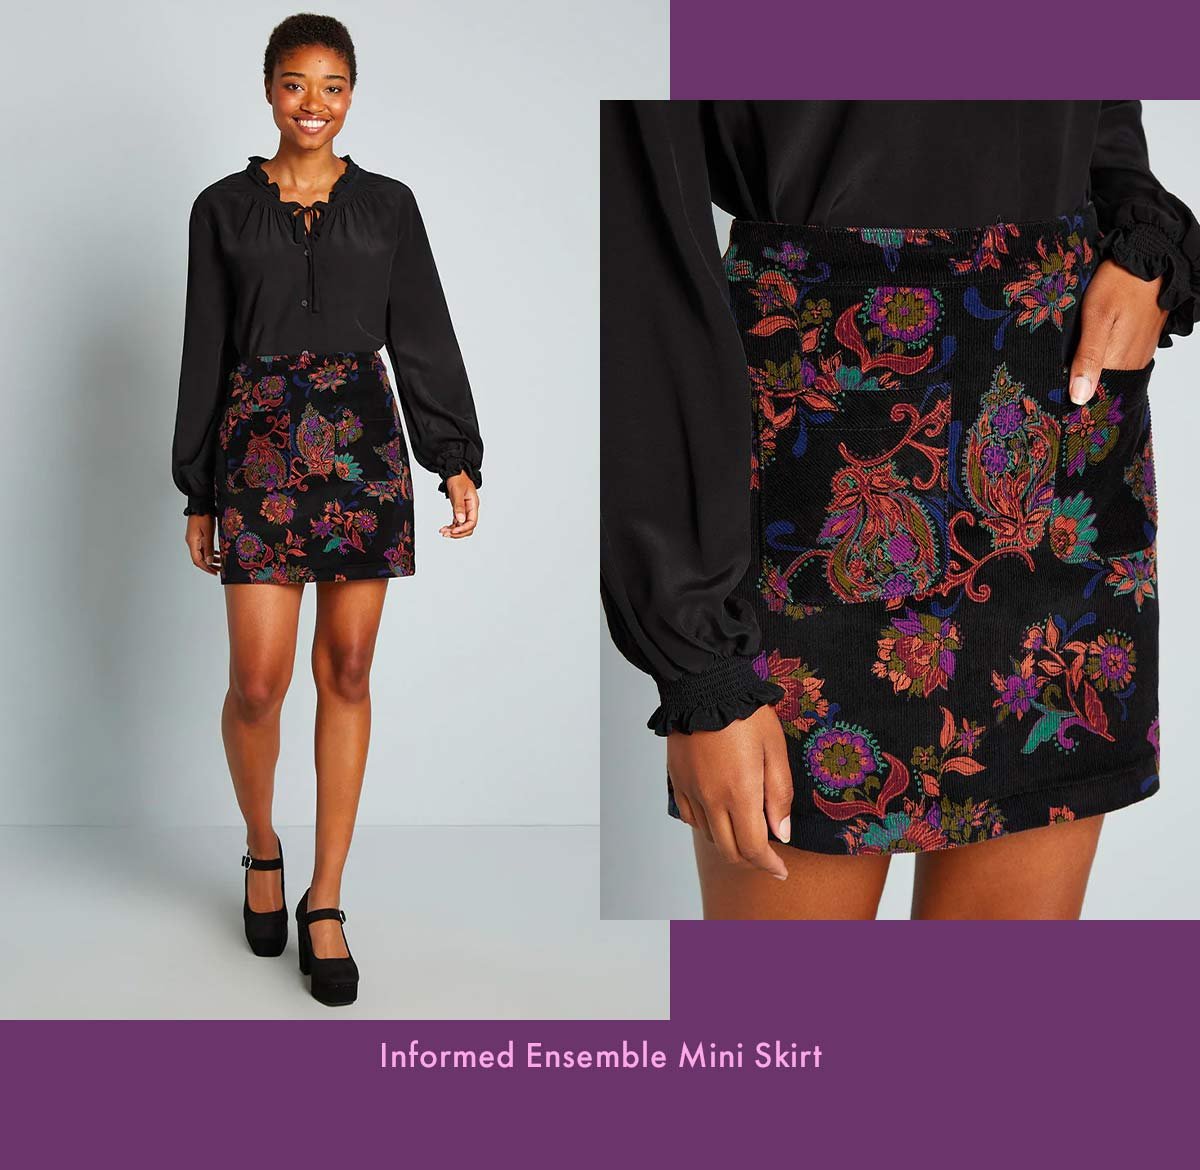 Informed Ensemble Mini Skirt